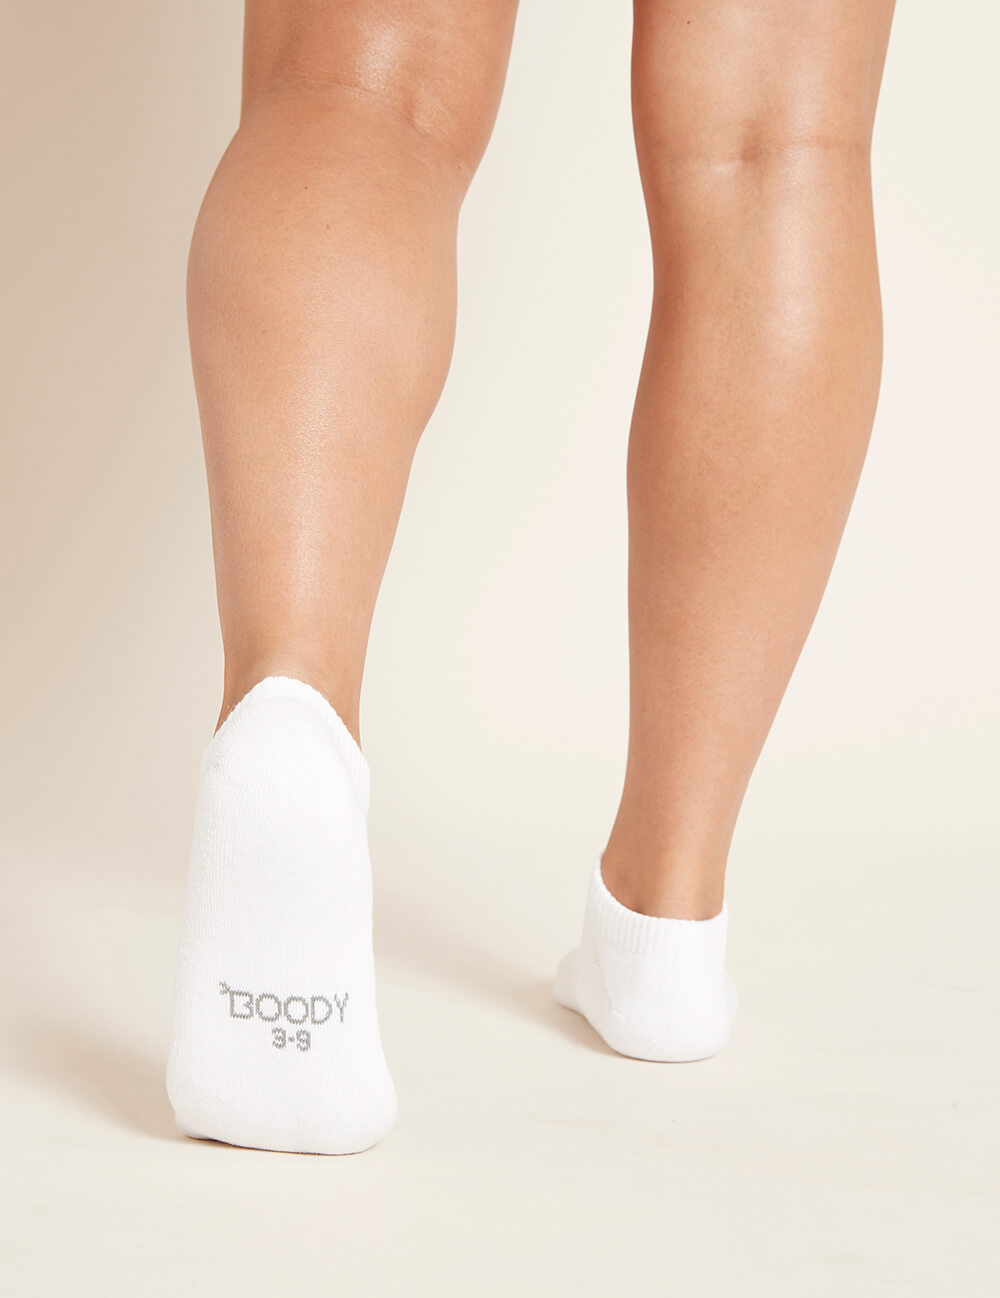 Boody Women's Low Cut Cushioned Sneaker Socks White Back